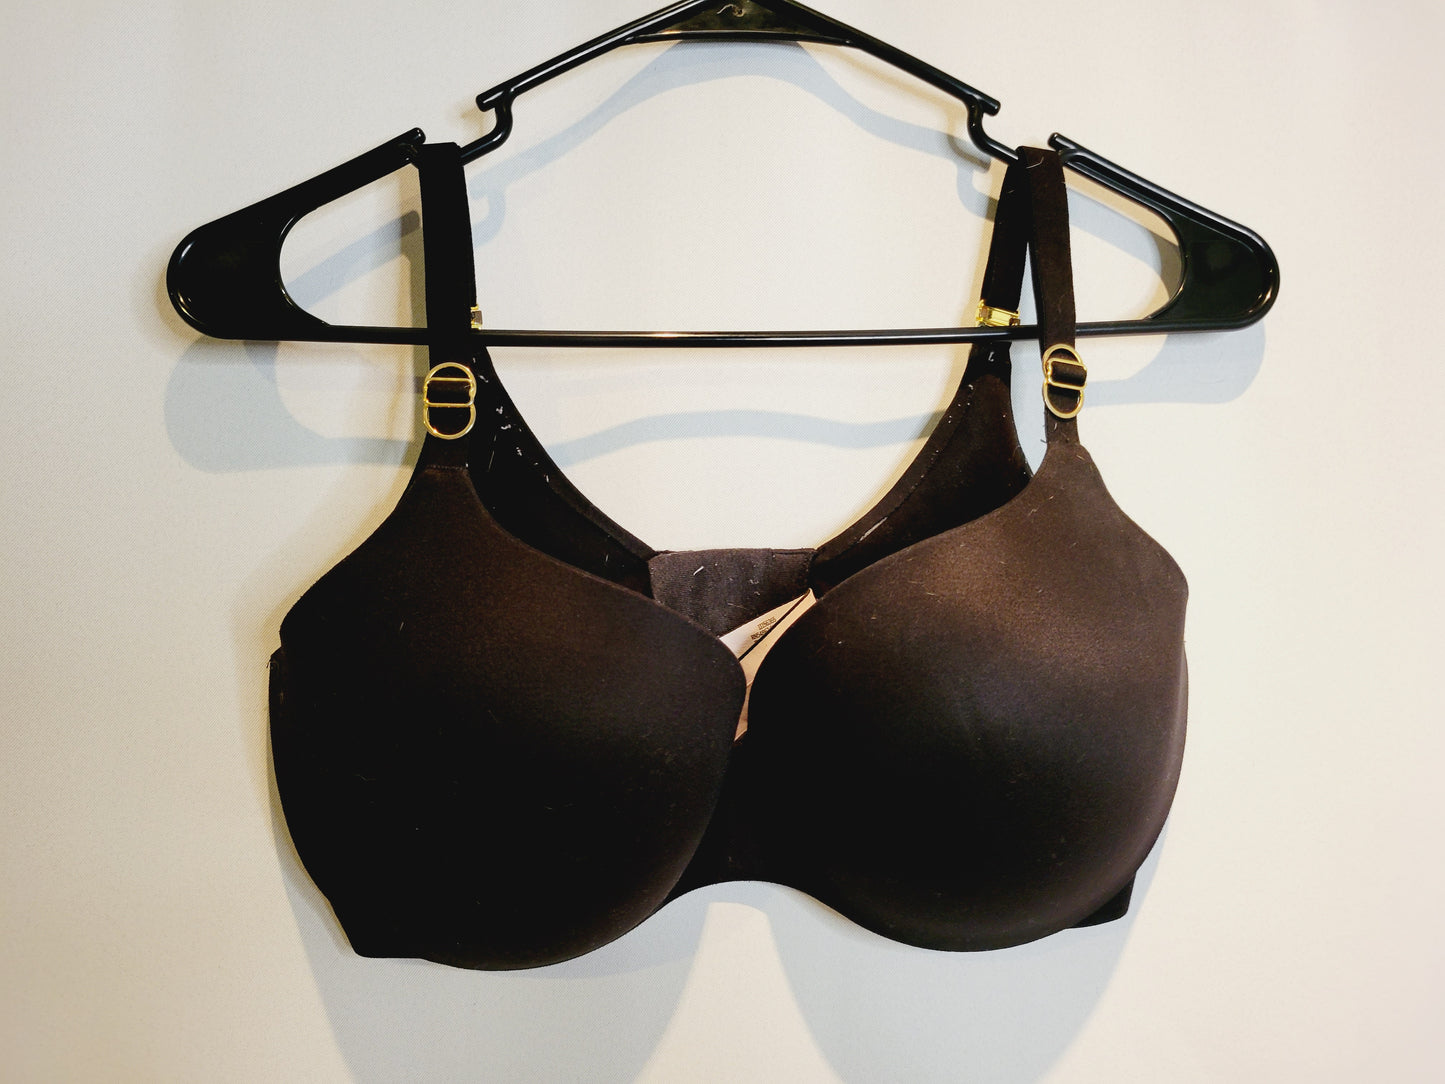 For sale- Natori Flora contour bras size 34DDD in beige/cream and